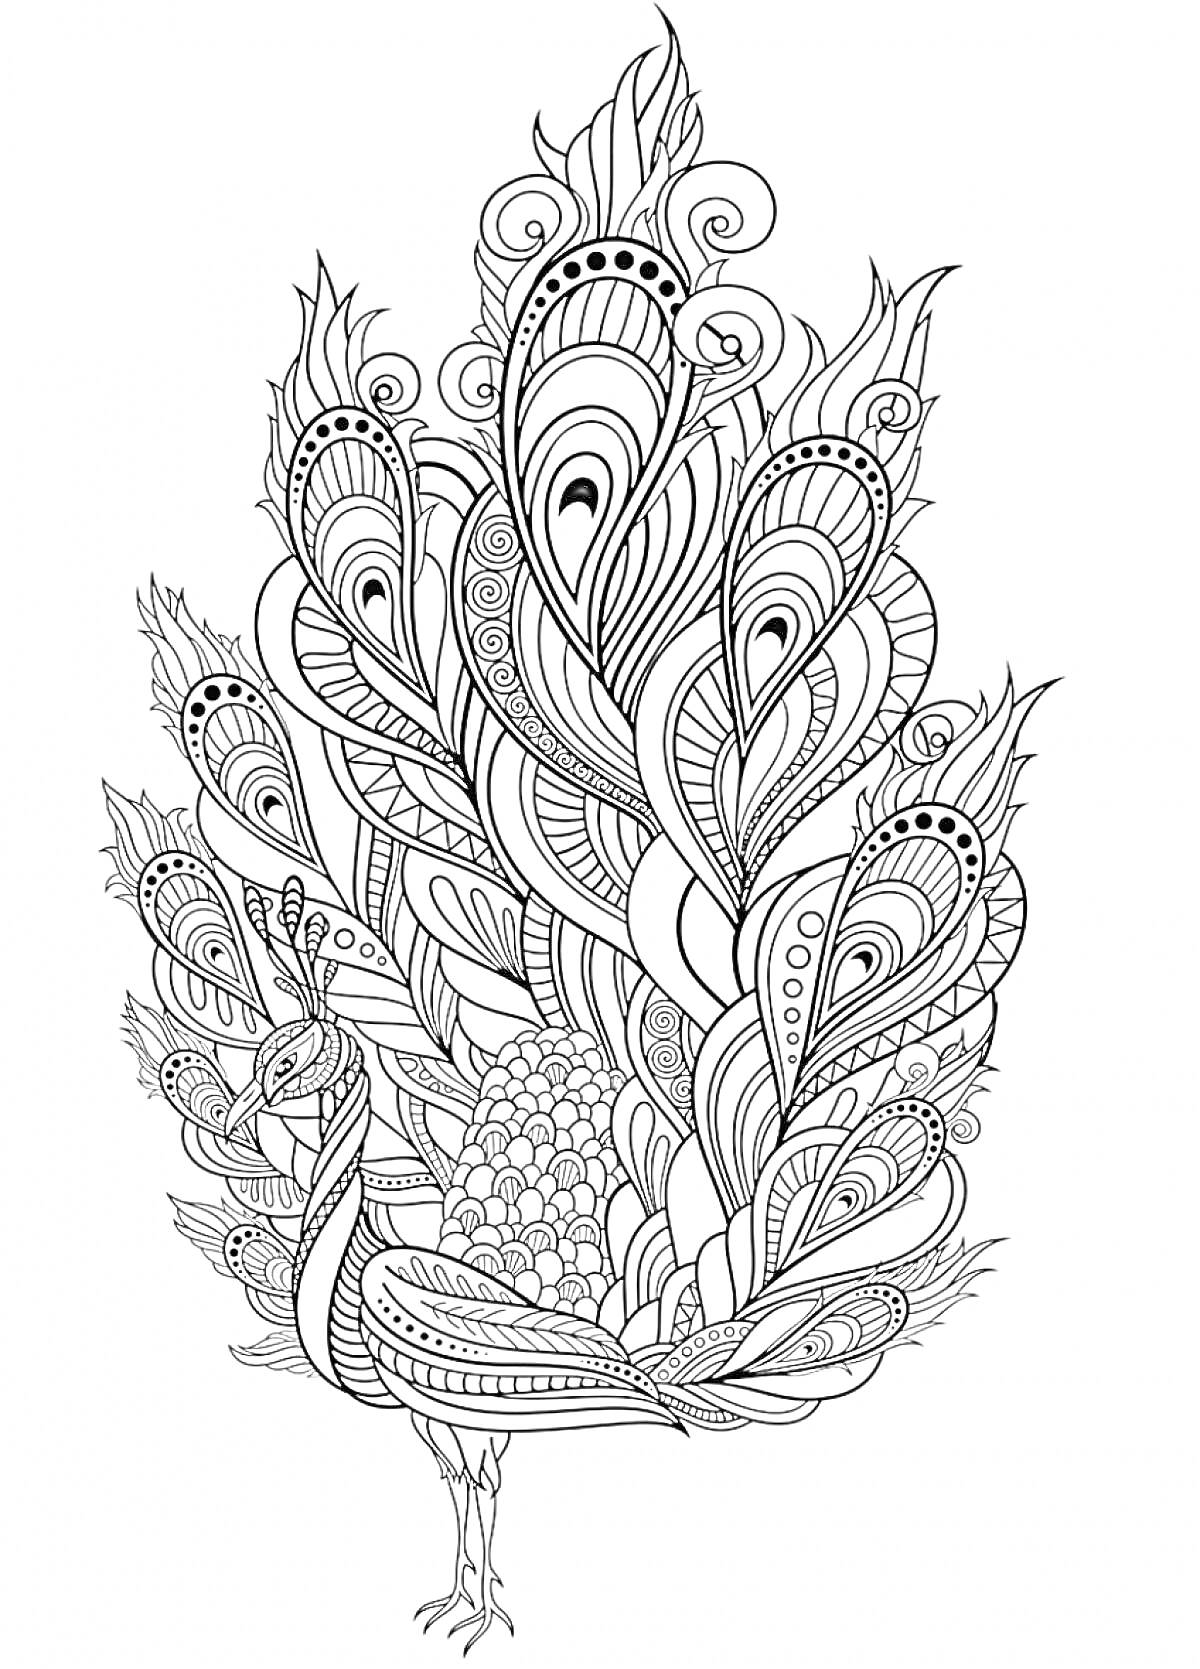 Раскраска Антистресс раскраска павлин с узорными деталями на перьях и сложными линиями